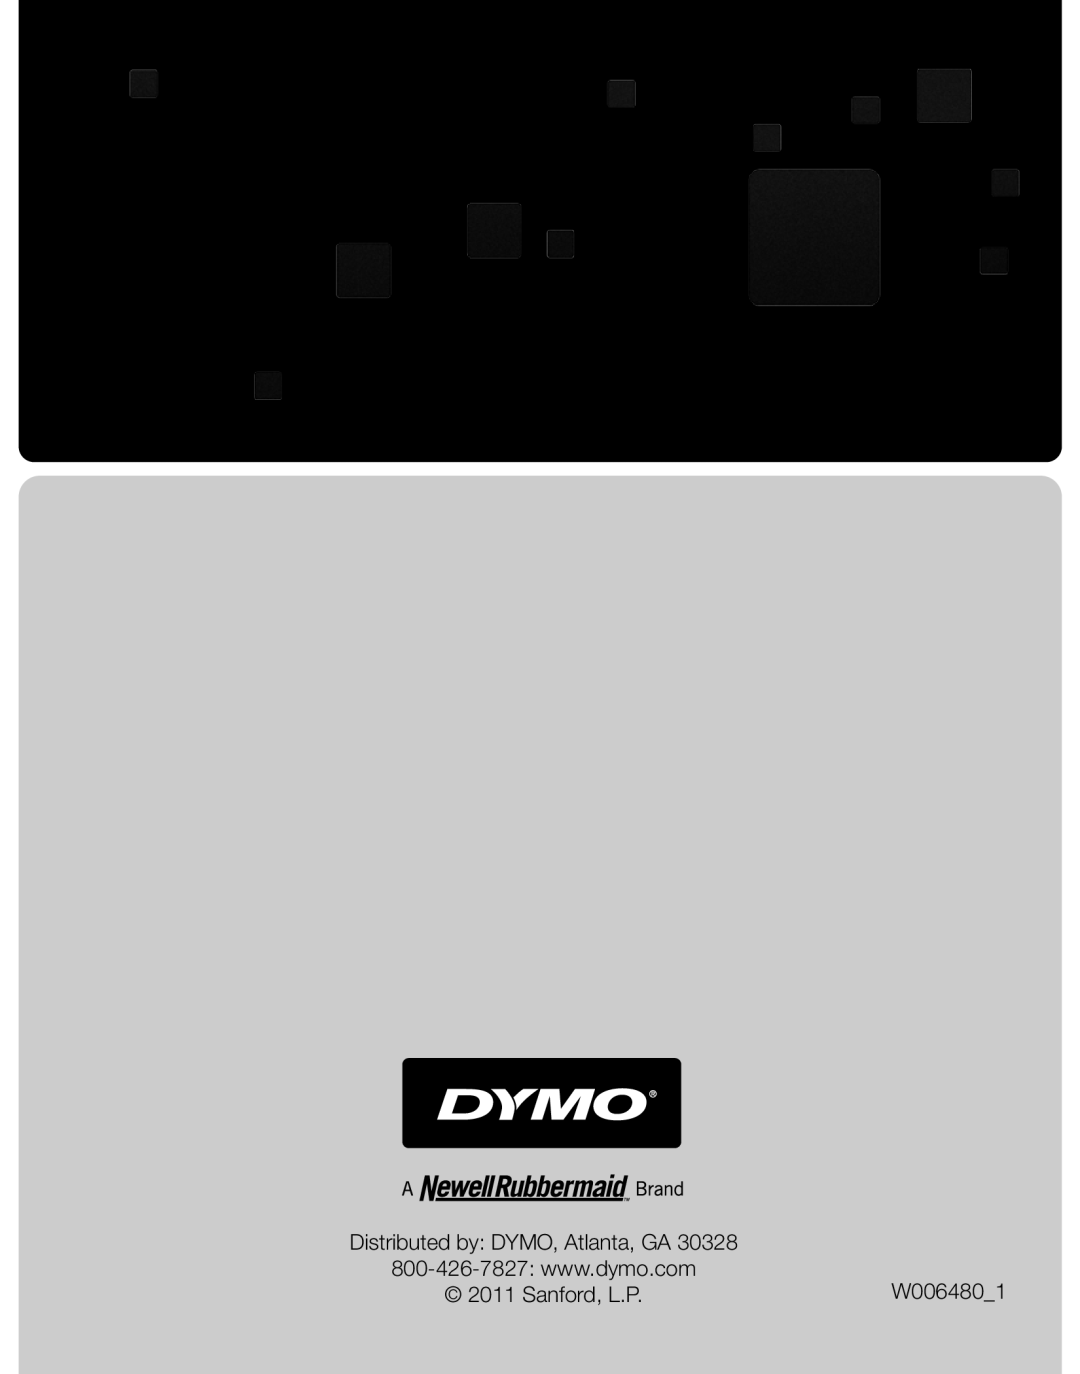 Dymo M25, M10 manual Distributed by DYMO, Atlanta, GA, W0064801, Sanford, L.P 